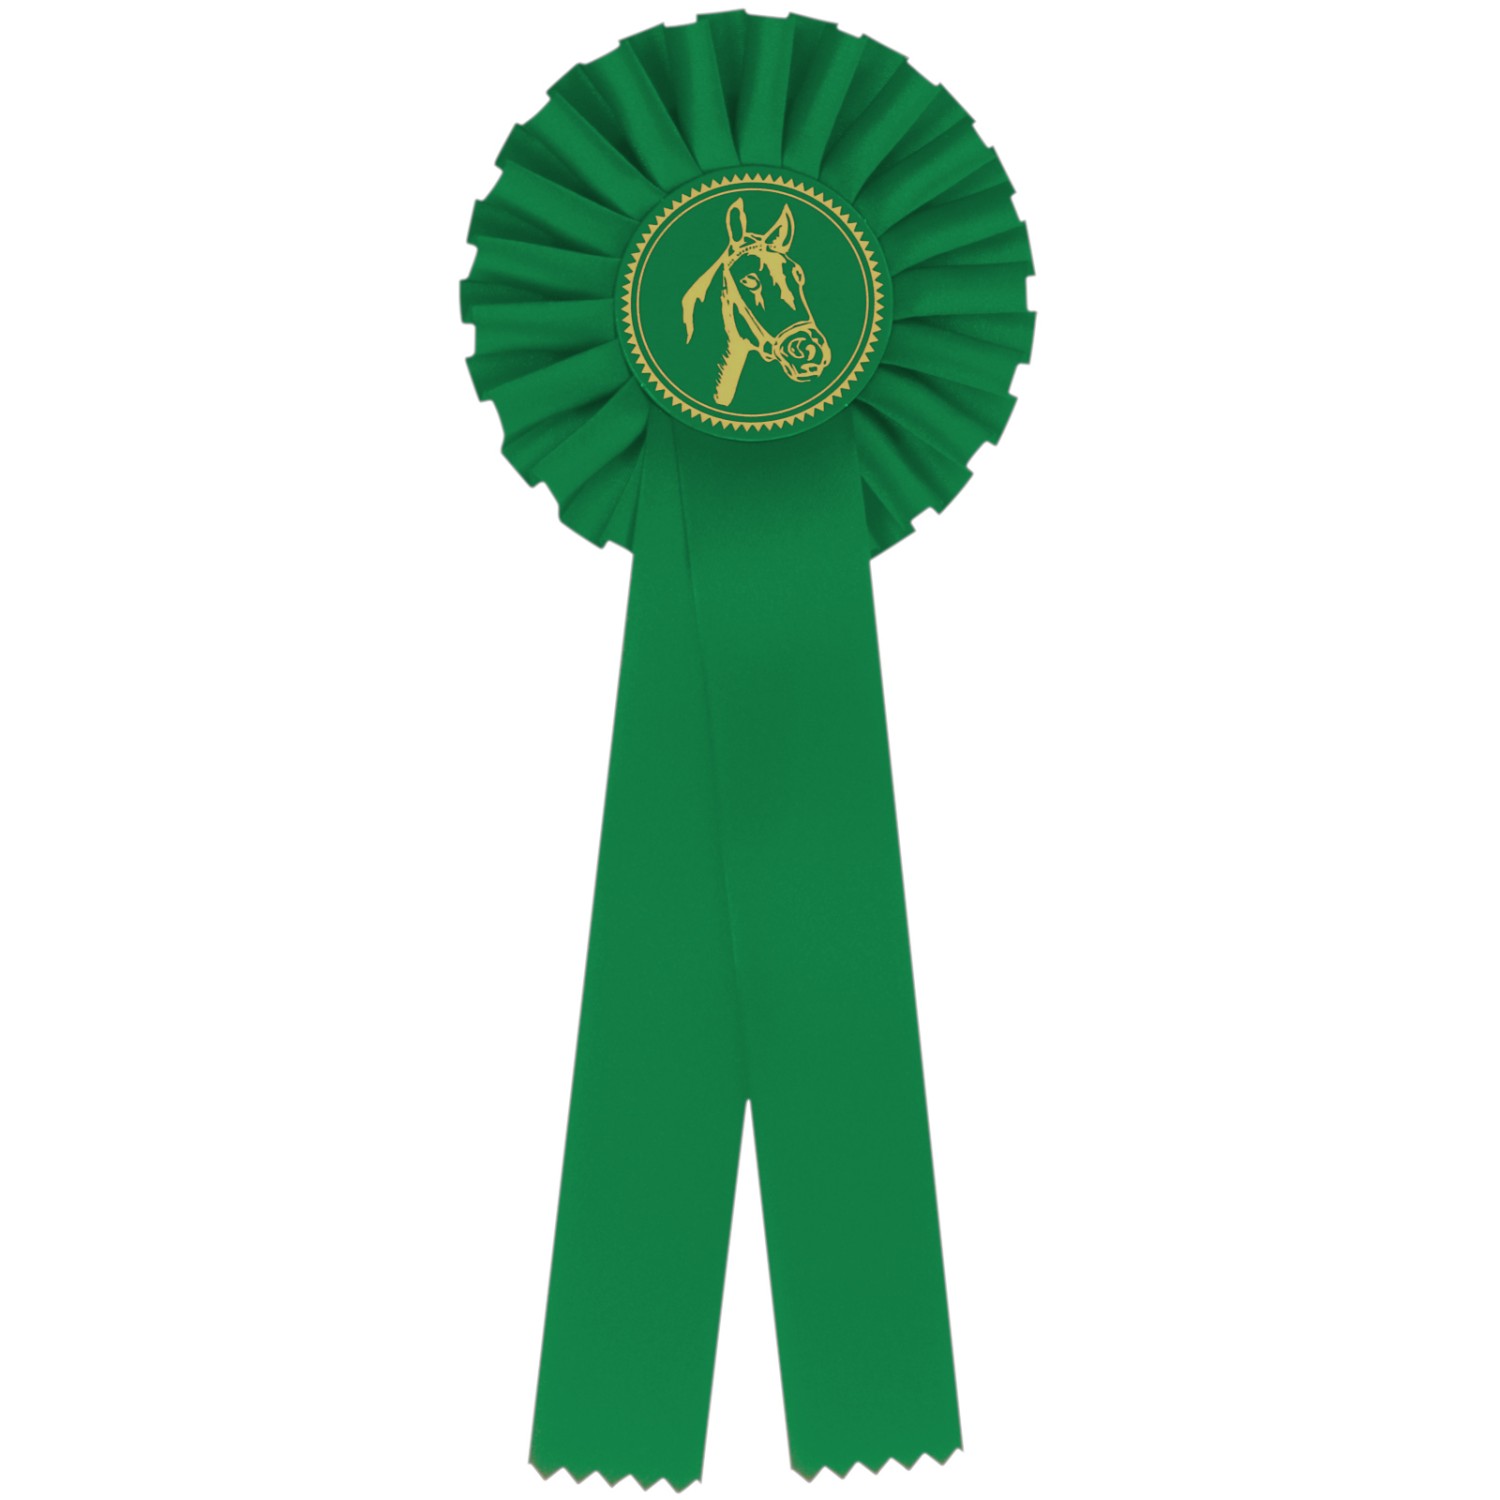 Turnierschleife für Pferde Pferdeschleife Rosette (Farbe: grün)